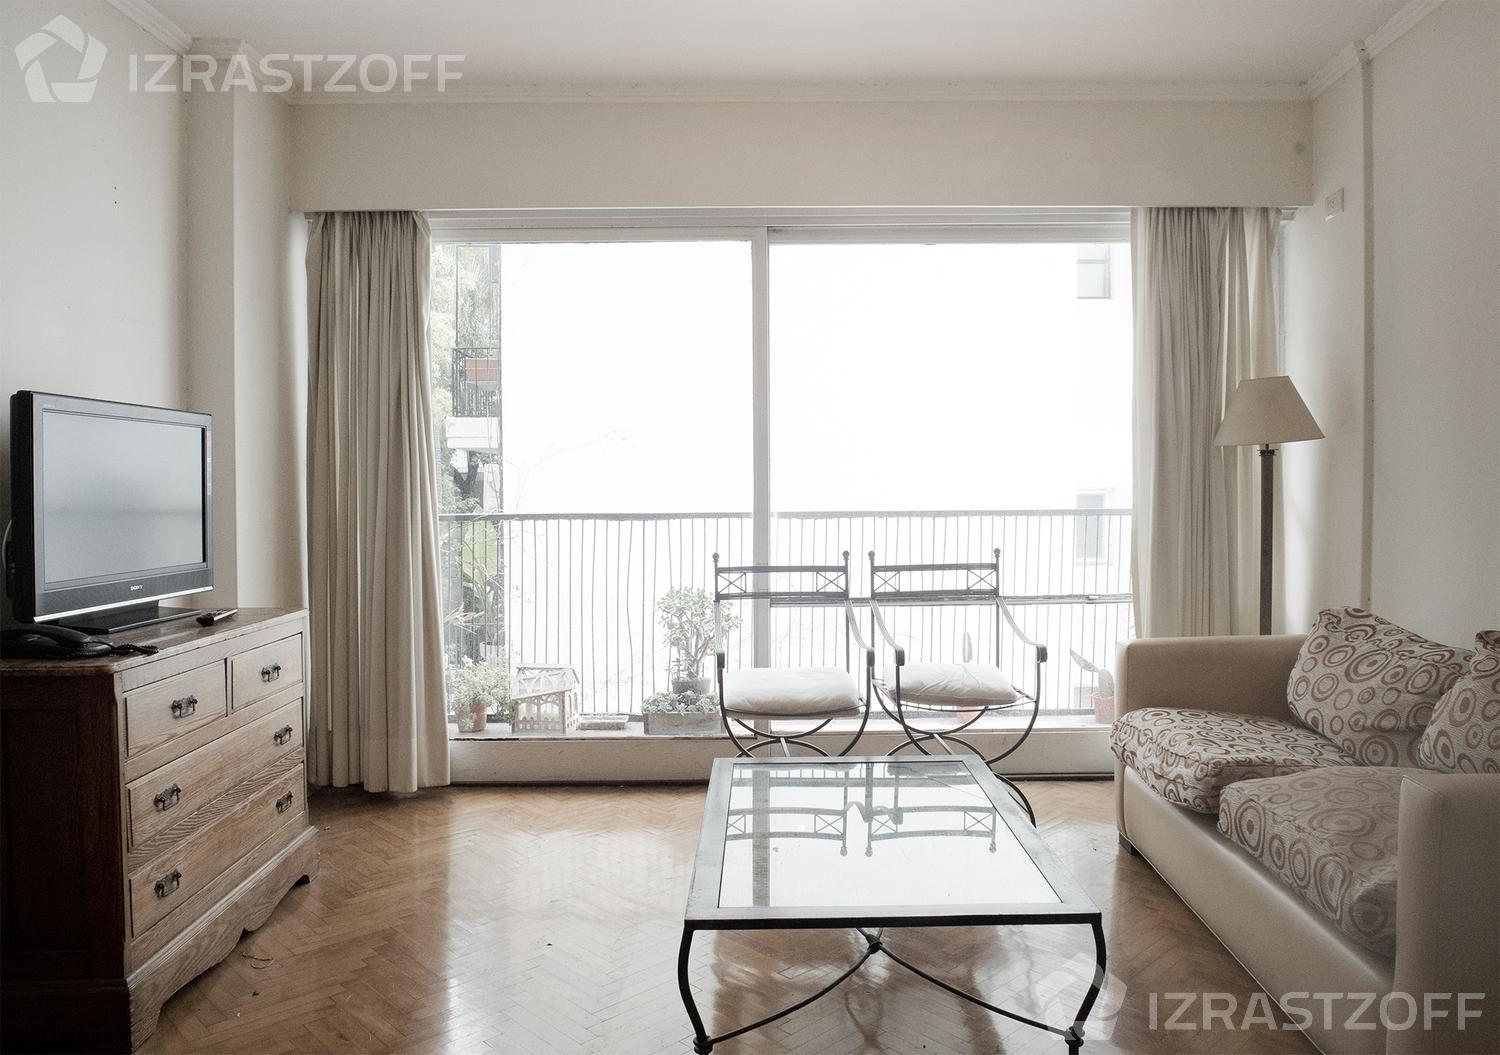 #5008270 | Rental | Apartment | Recoleta (Izrastzoff Agentes Inmobiliarios)